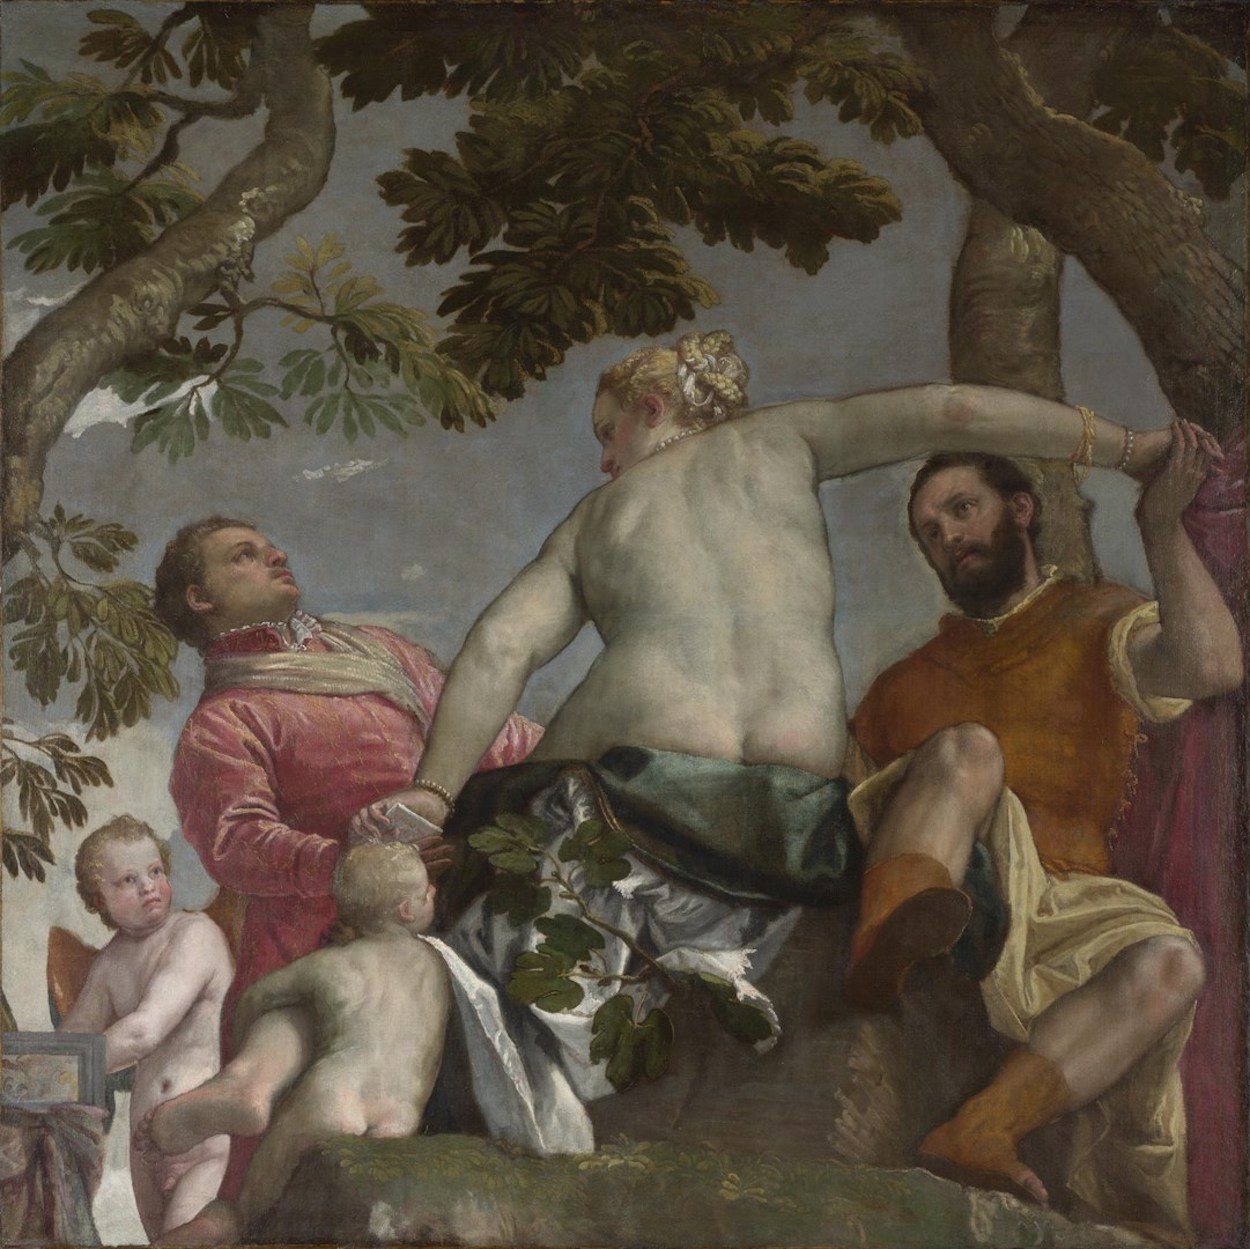 La infidelidad by Paolo Veronese - hacia 1575 - 189,9 x 189,9 cm Galería Nacional